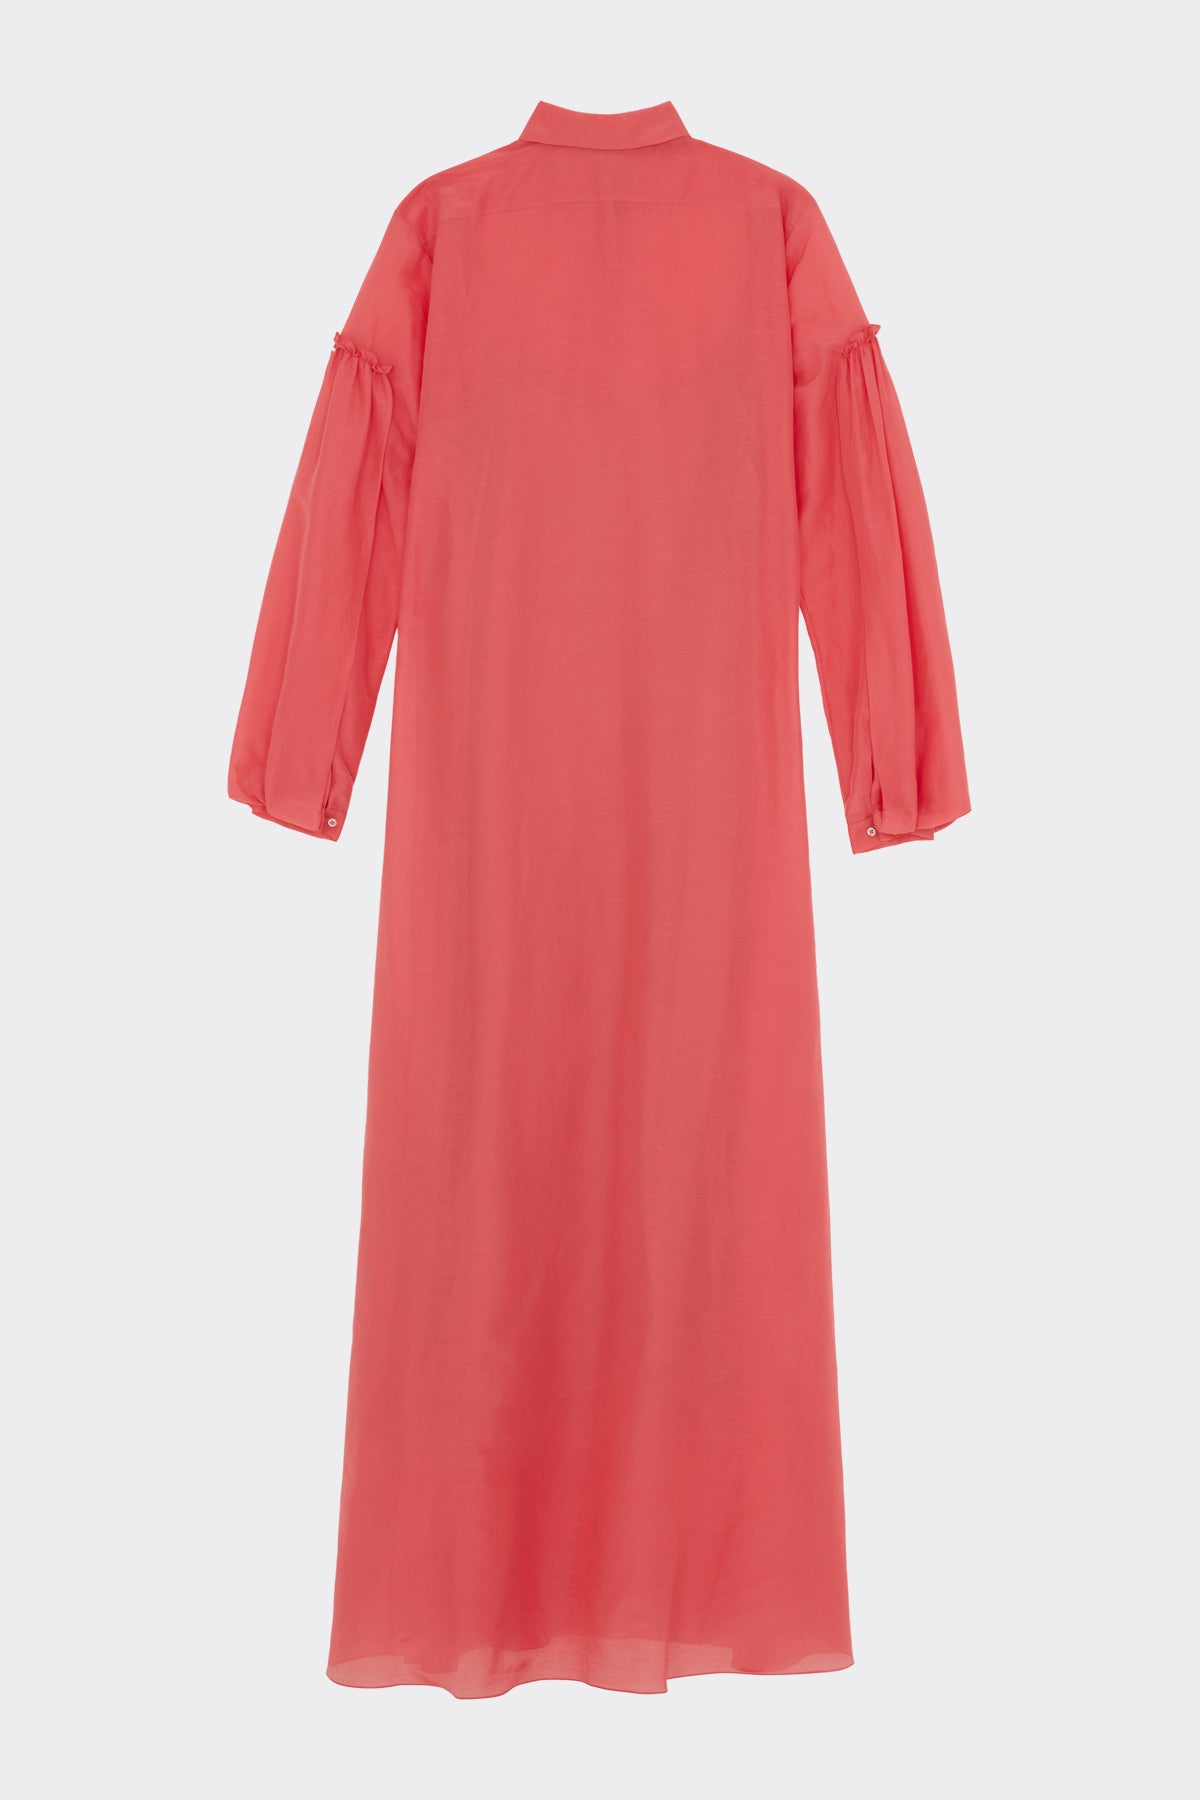 Jolene Dress in Raspberry| Noon by Noor